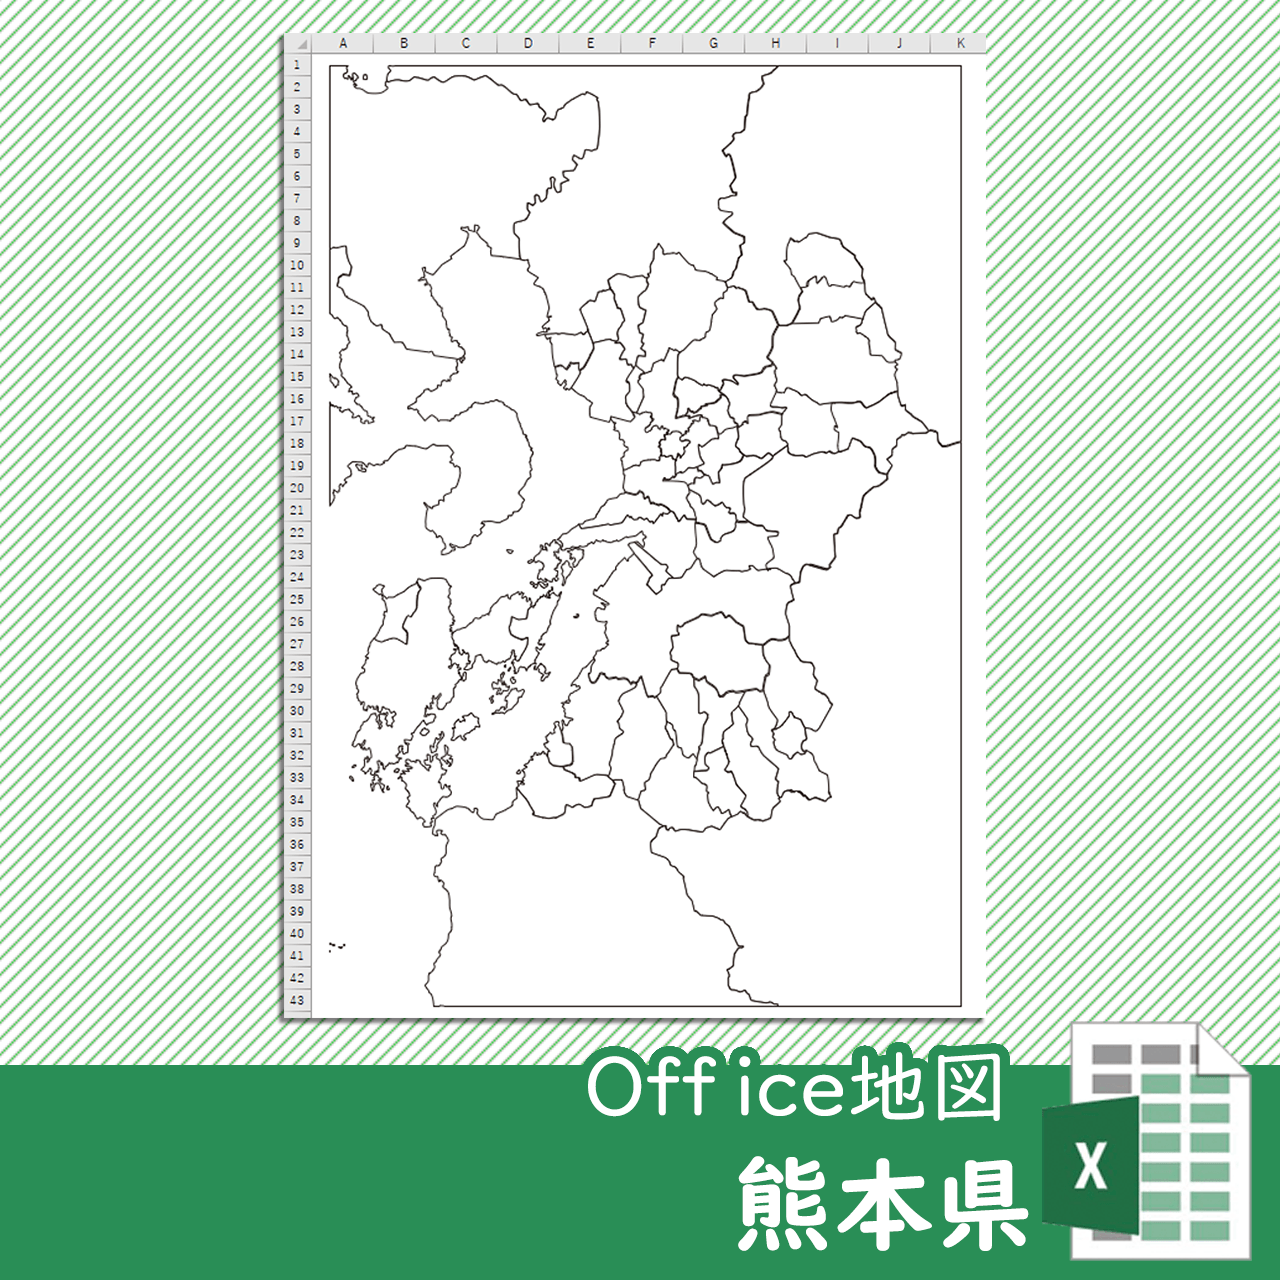 熊本県のOffice地図のサムネイル